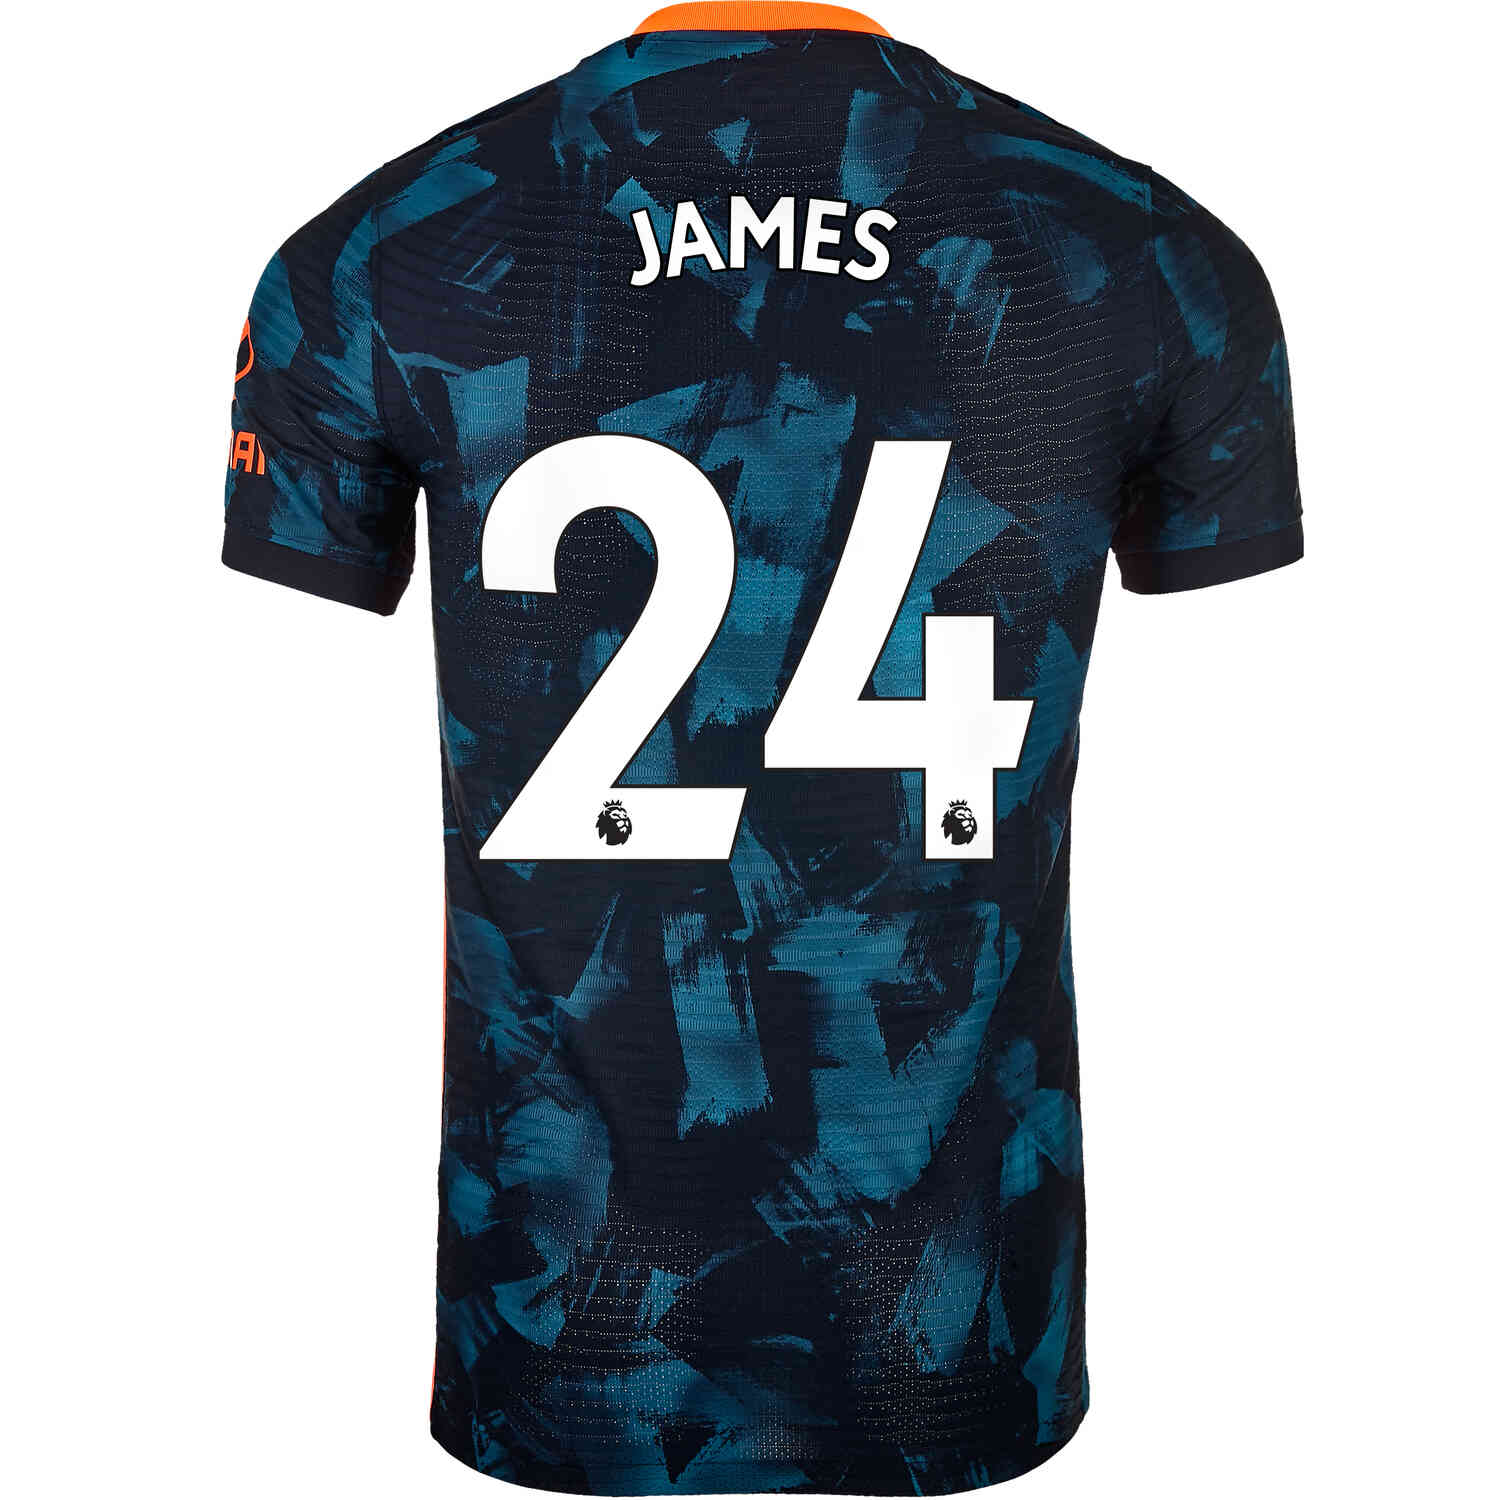 2021/22 Nike Reece James Chelsea 3rd Match Jersey - SoccerPro